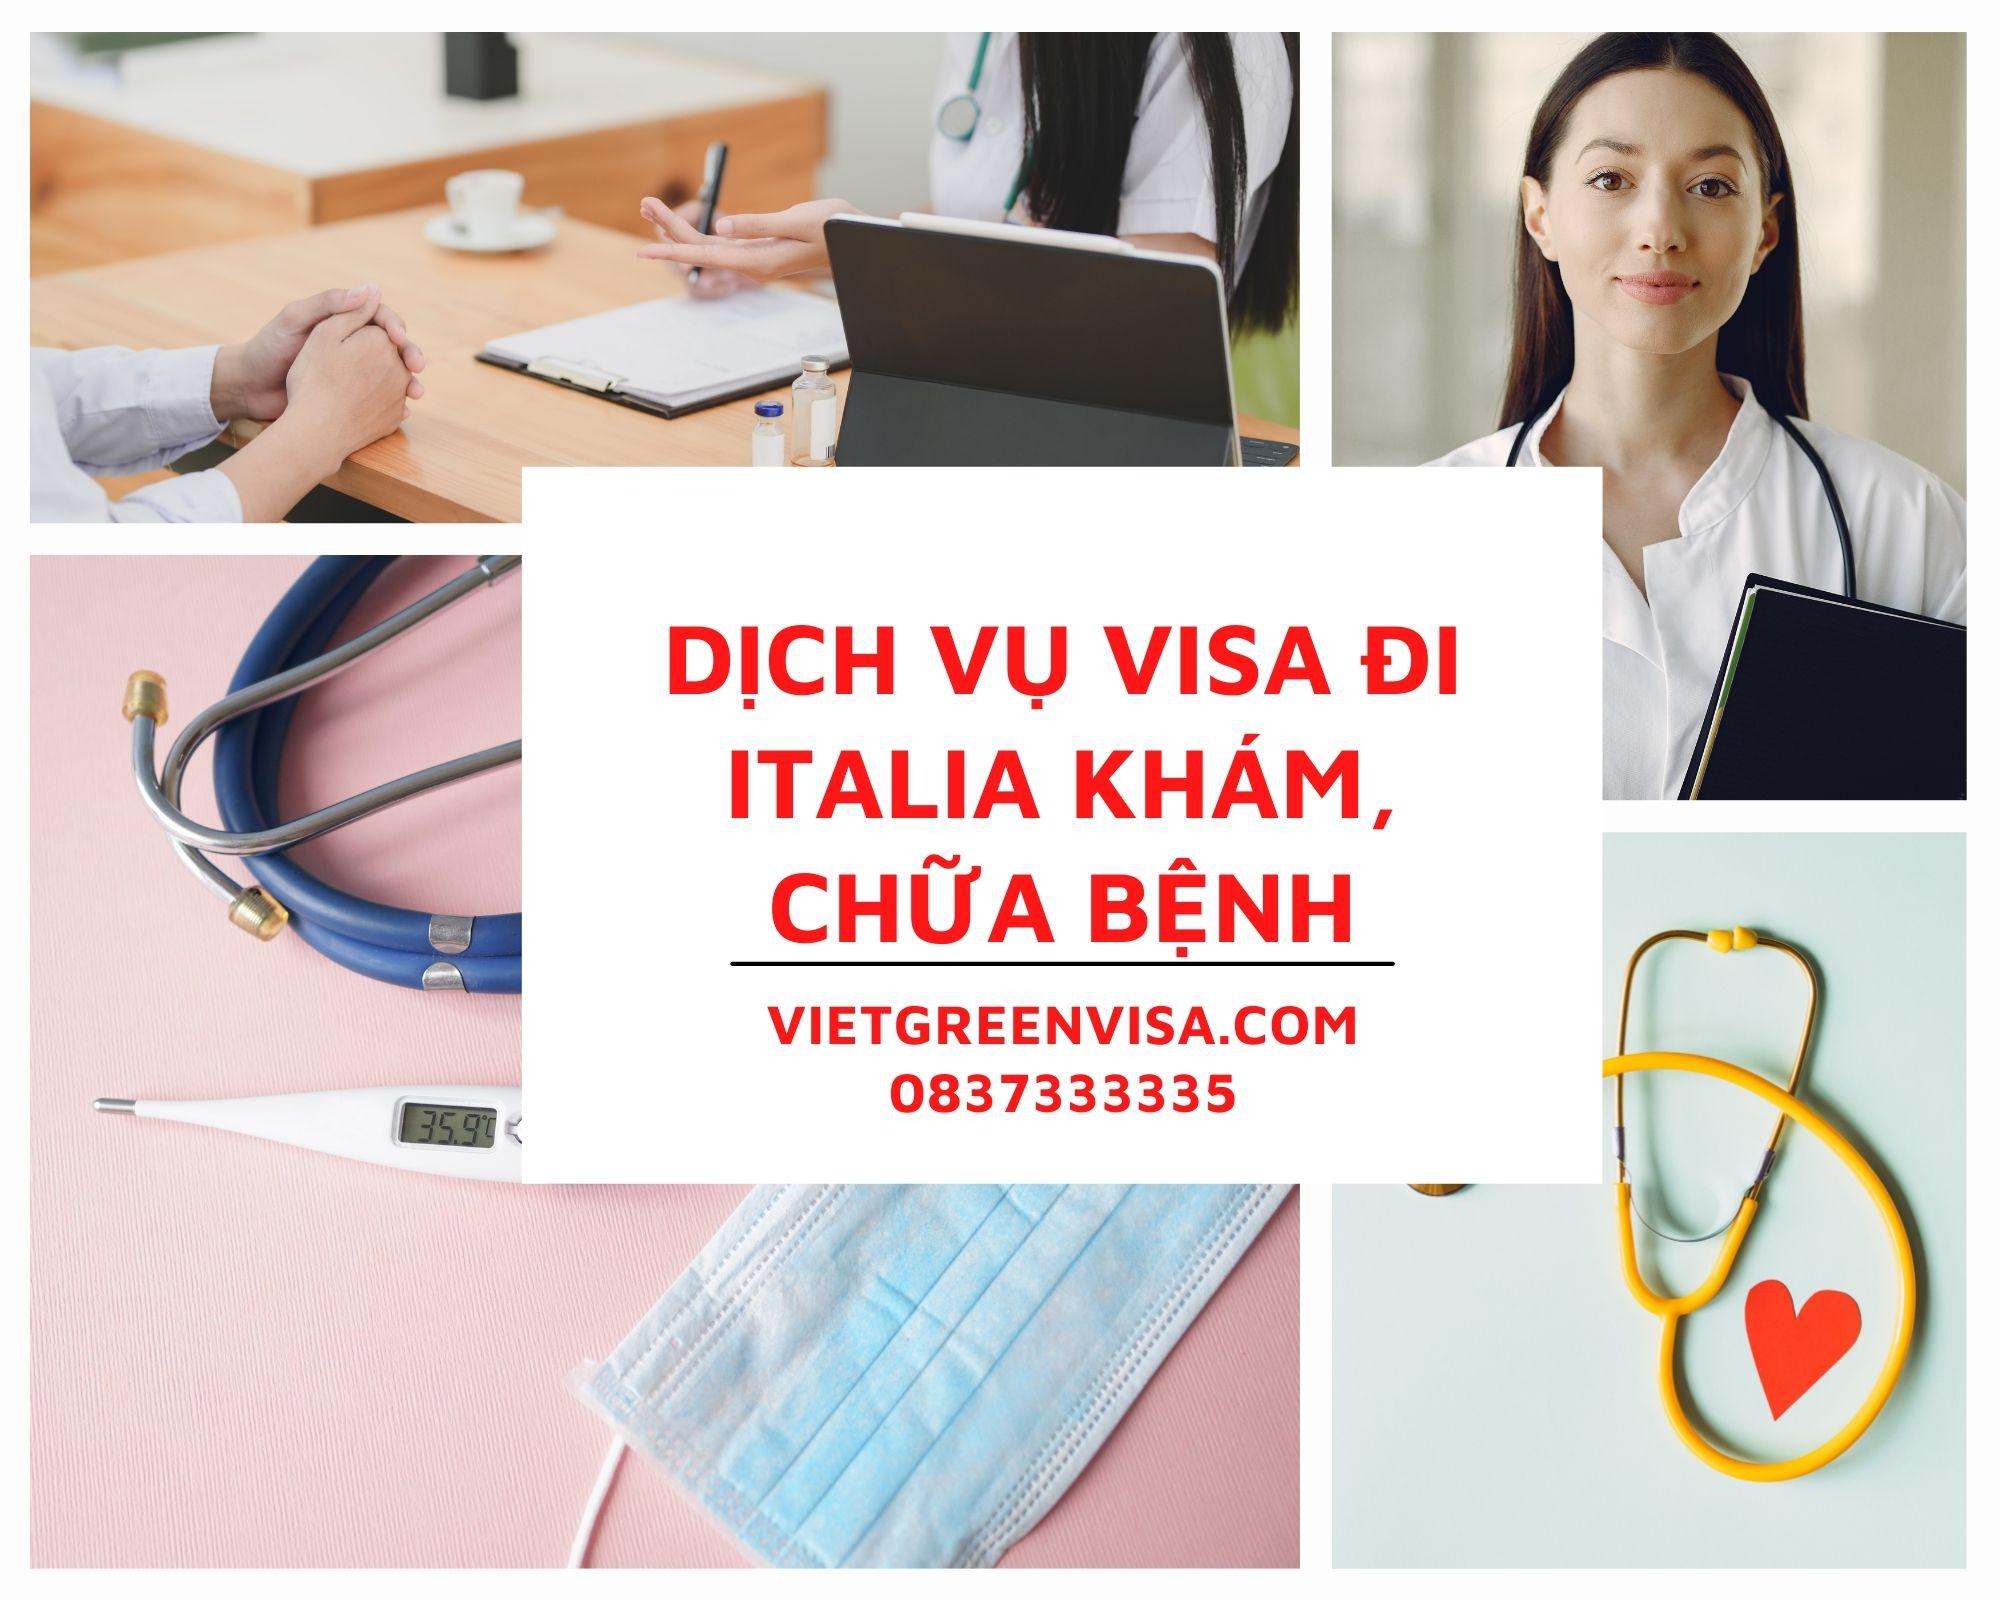 Làm visa đi Italia khám chữa bệnh nhanh chóng